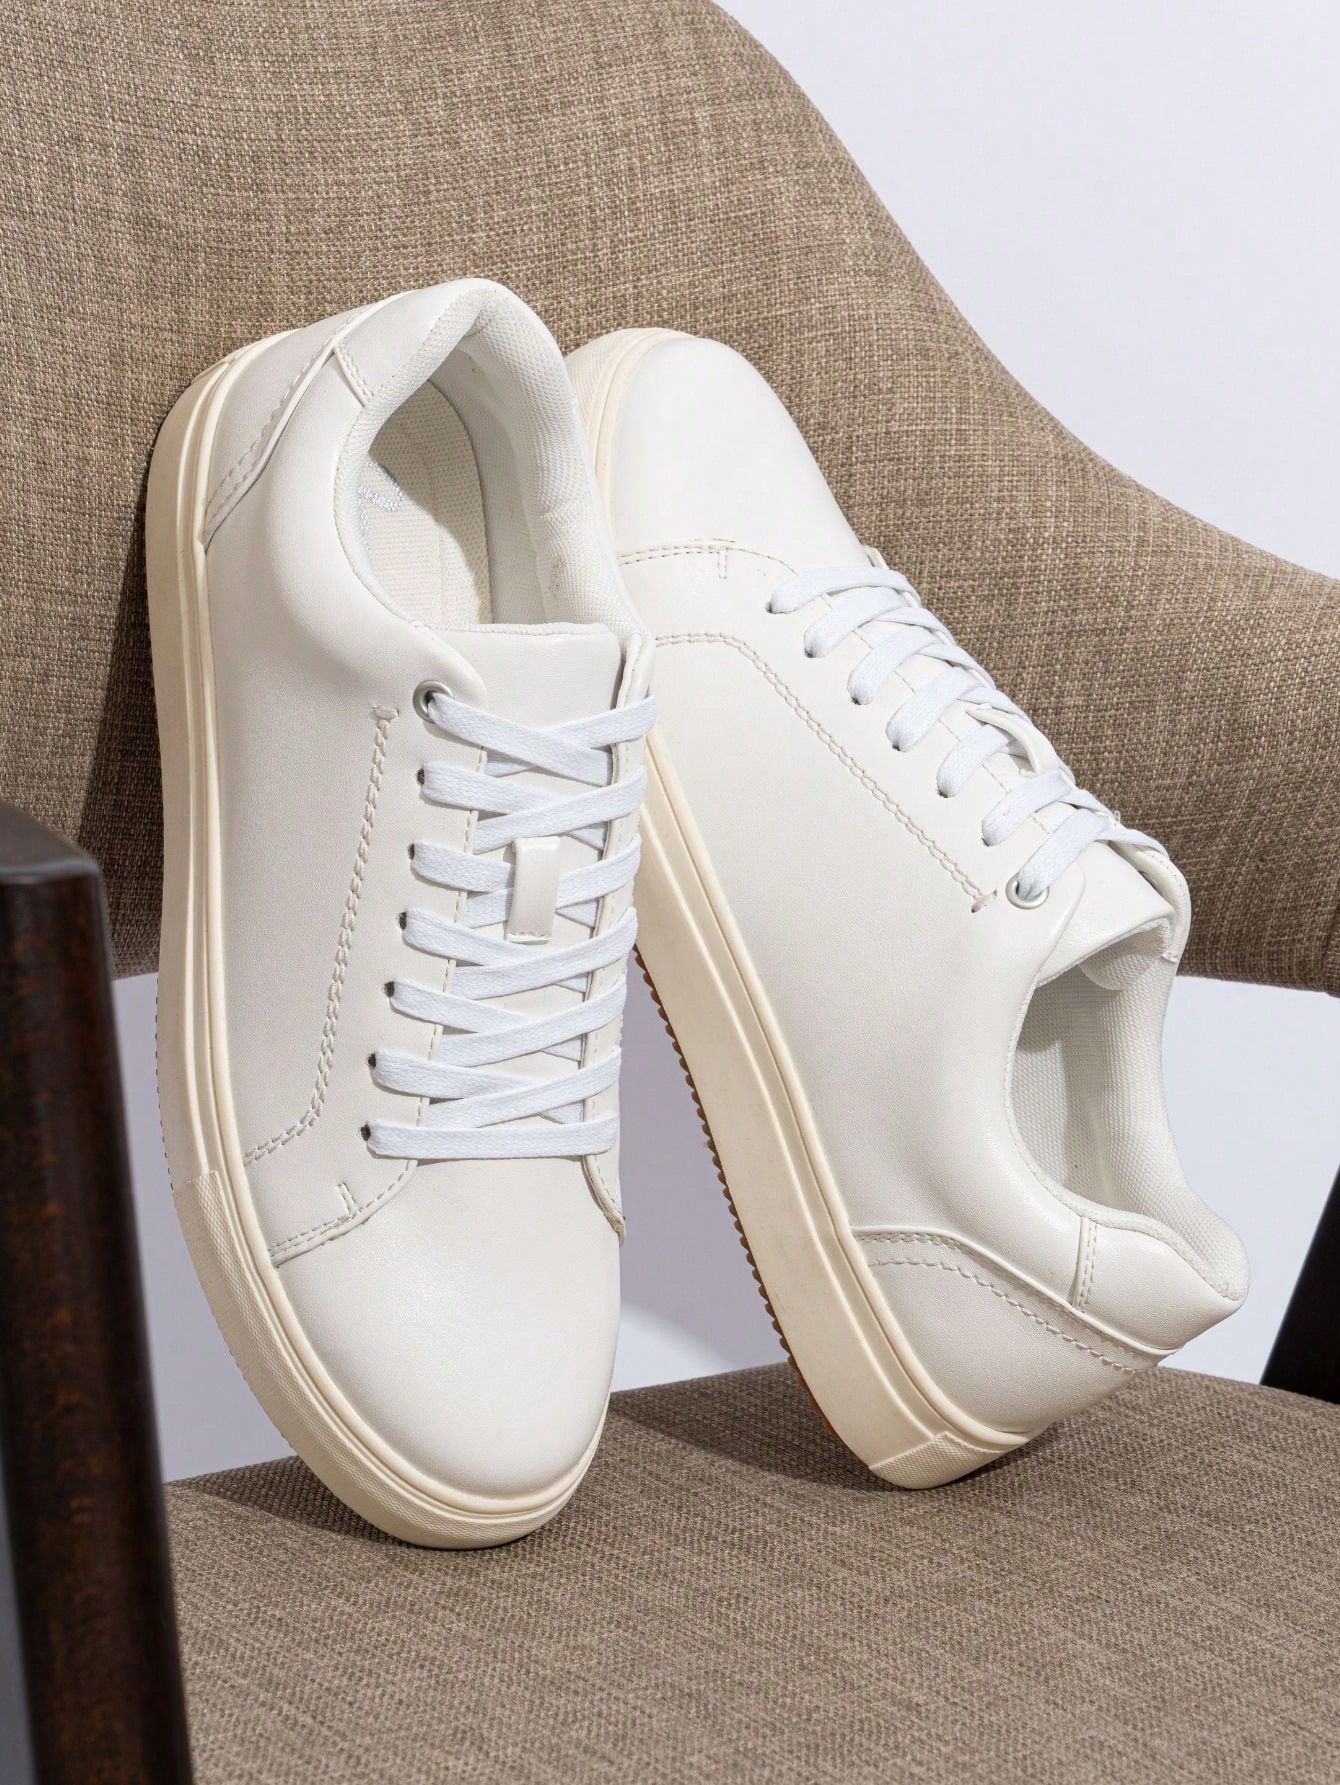 SHOESMALL Мужская повседневная обувь Белые мужские модные кроссовки Деловые классические кроссовки Обувь для скейтбординга, amy5126-белый цена и фото